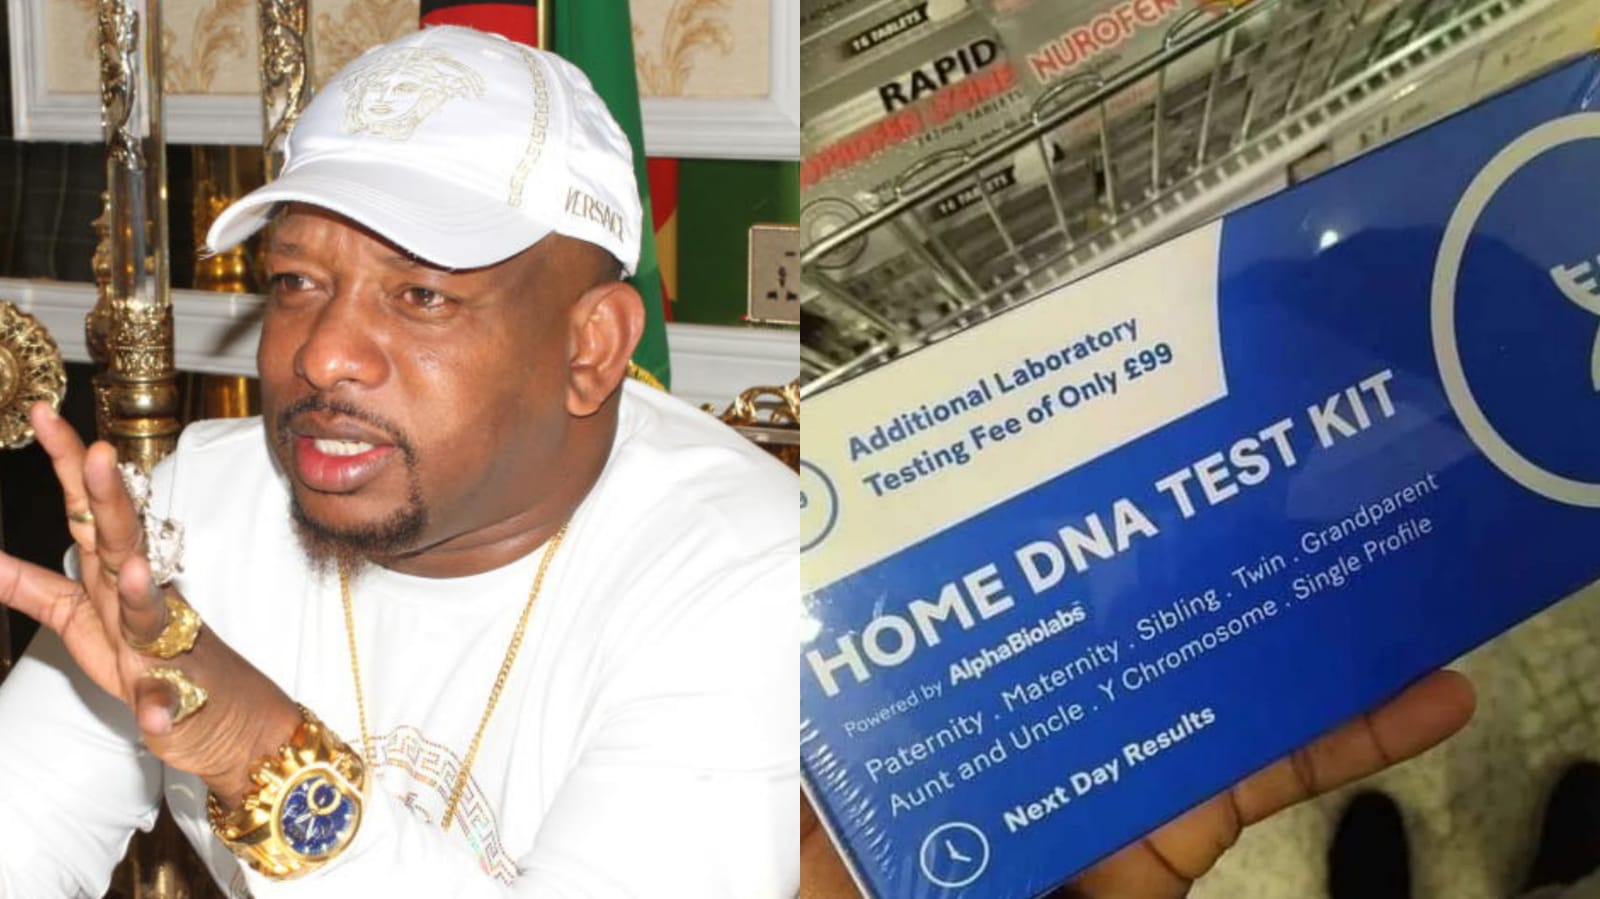 Mike Sonko Advises men against using home DNA test kits